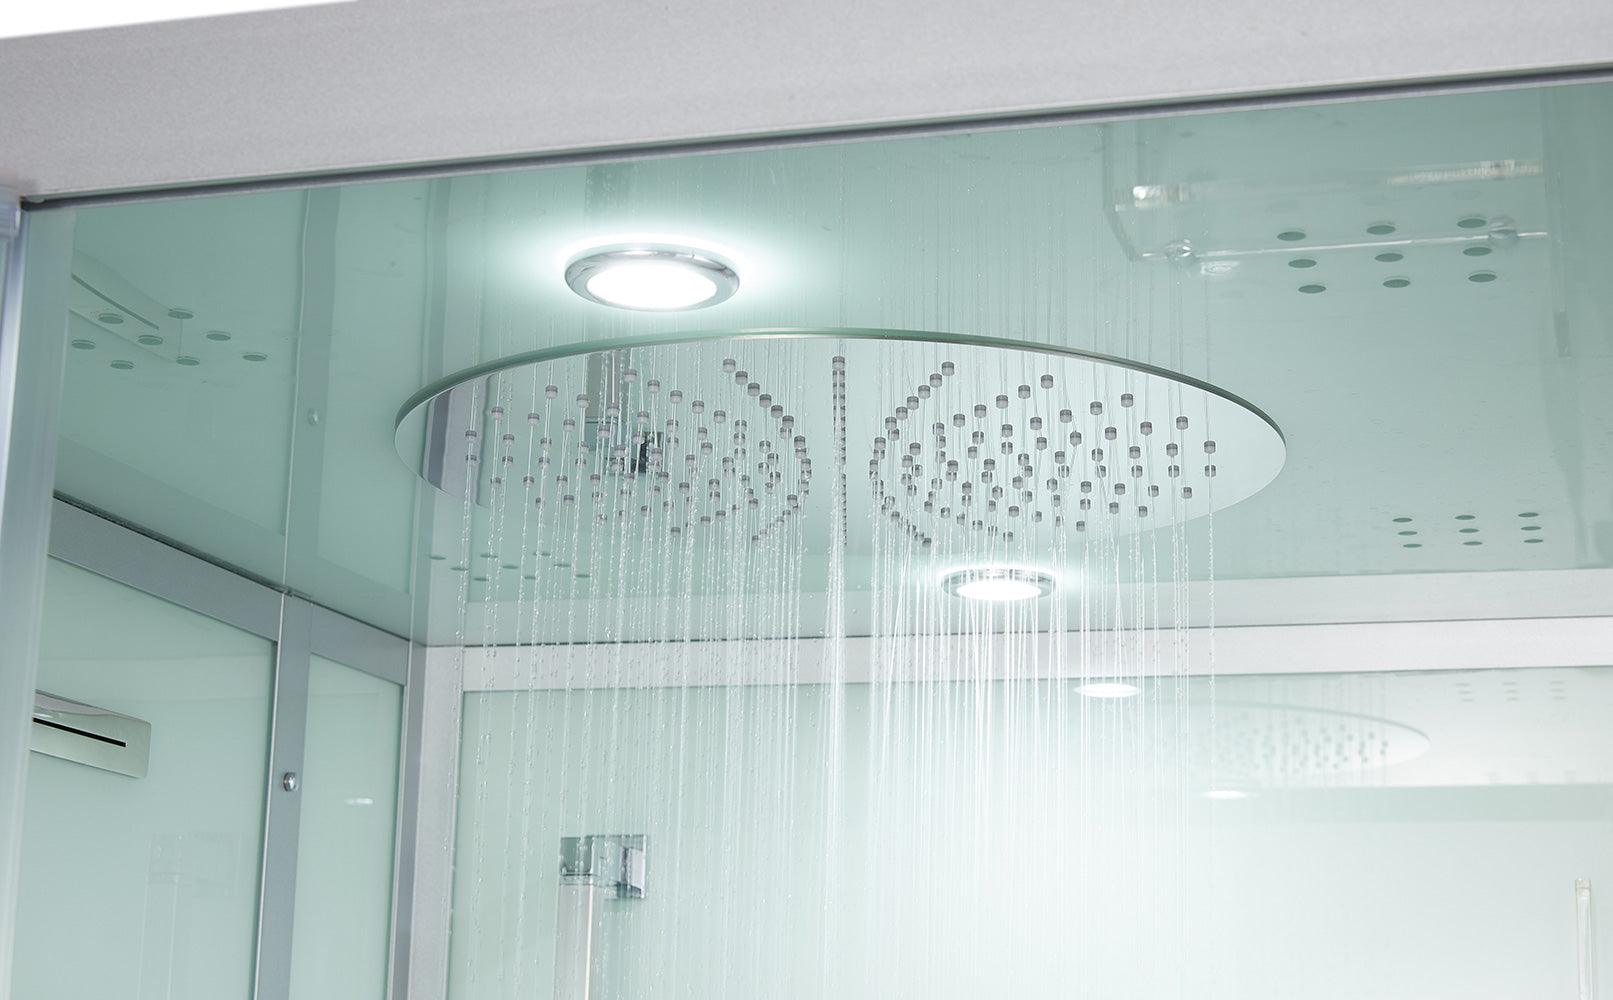 Maya Bath Platinum Arezzo Steam Shower - Bathroom Design Center